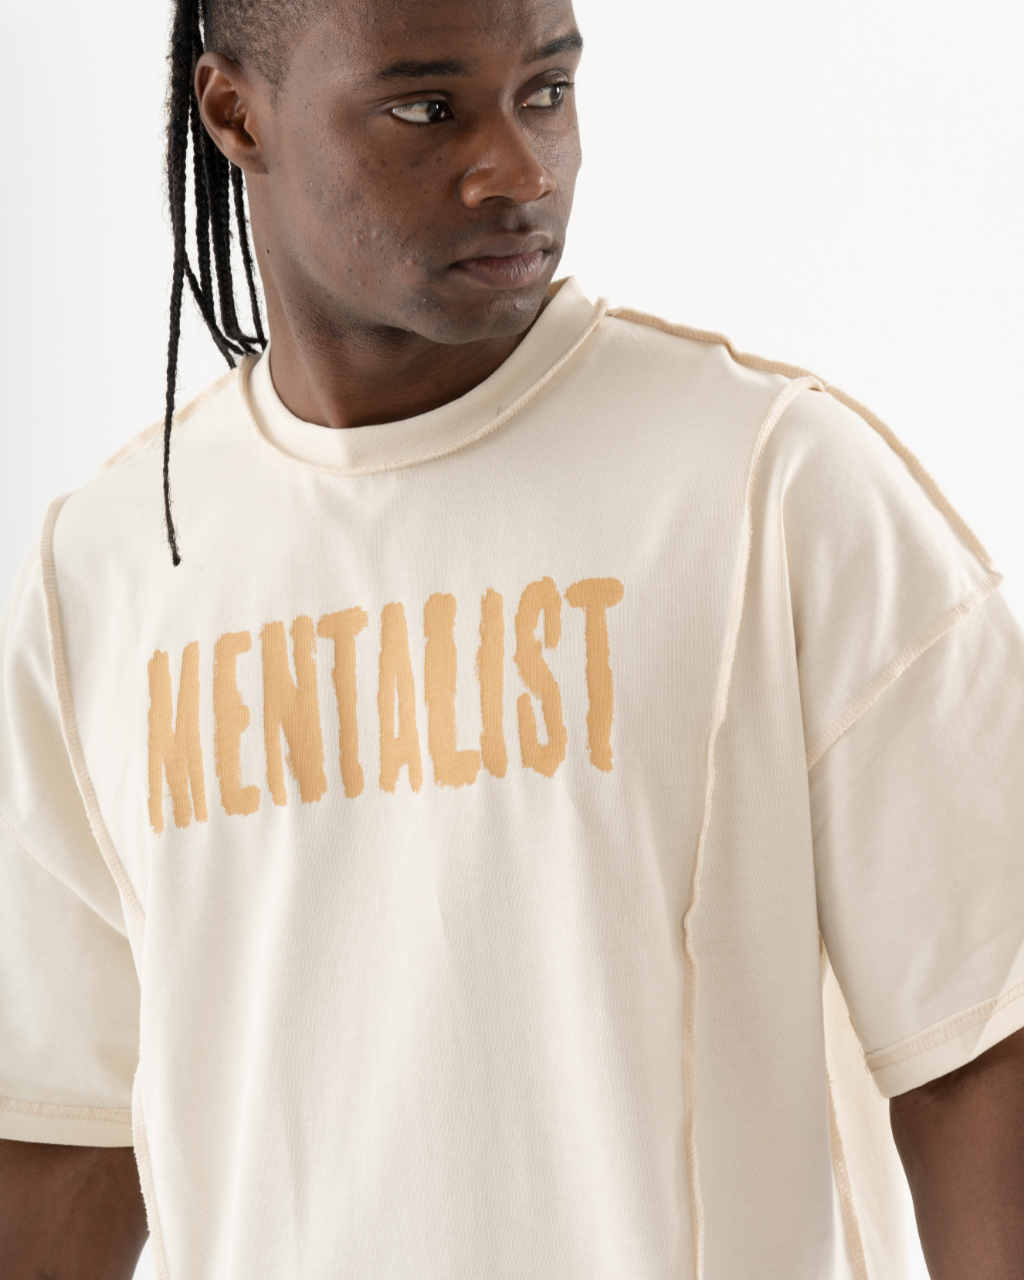 A man wearing a Mentalist T-Shirt | Beige.